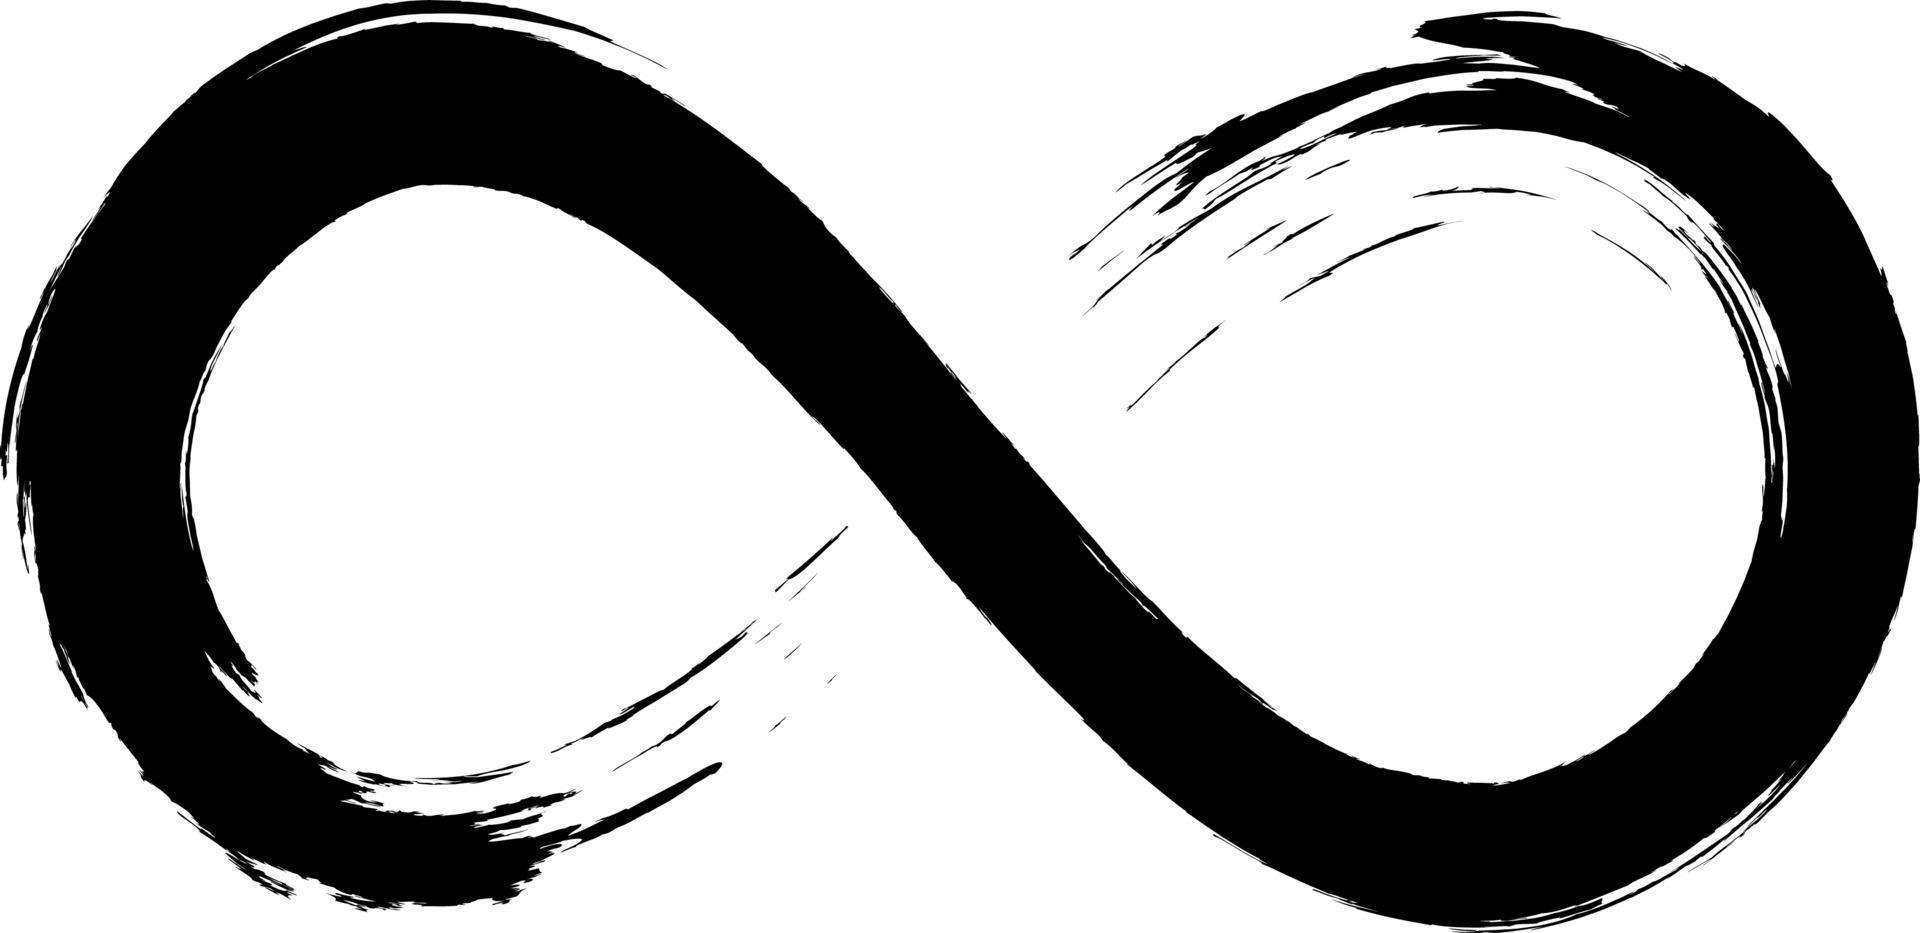 grunge oneindigheidssymbool. met de hand beschilderd met zwarte verf. grunge penseelstreek. moderne eeuwigheid icoon. grafisch ontwerpelement. oneindige mogelijkheden, eindeloos proces. vector